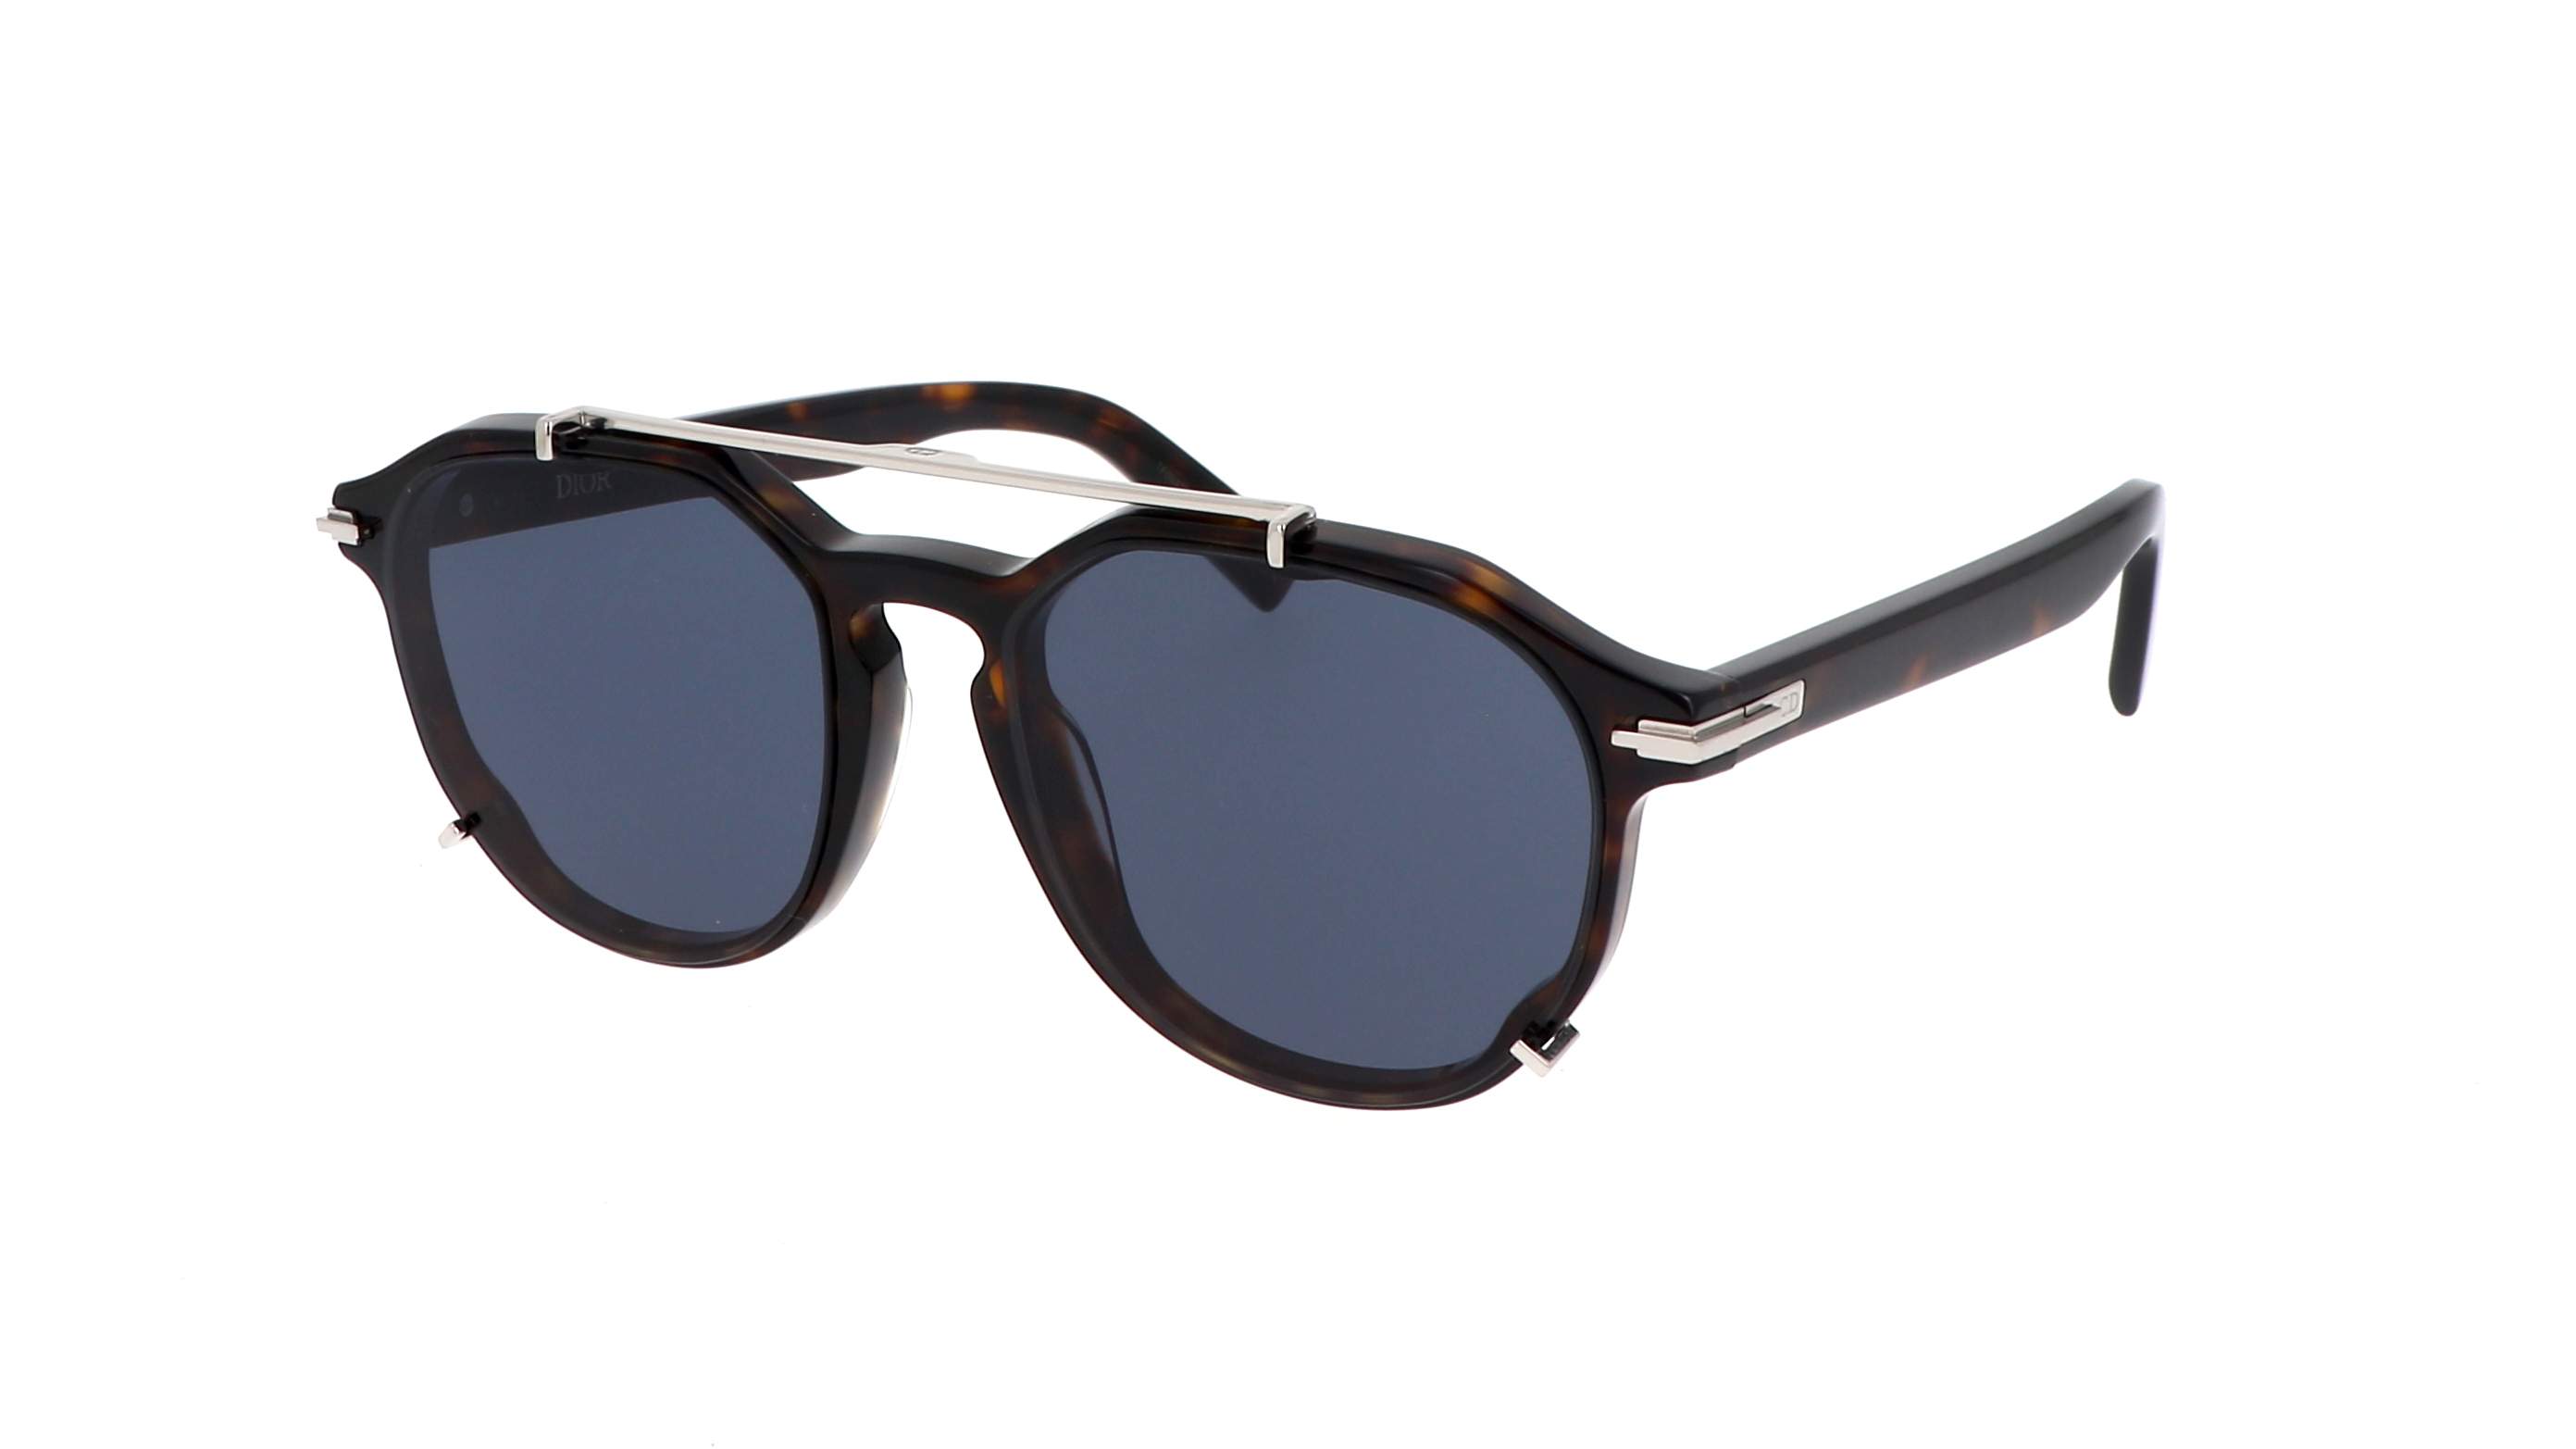 Designer Sunglasses for Women - Aviator, Cat Eye | DIOR